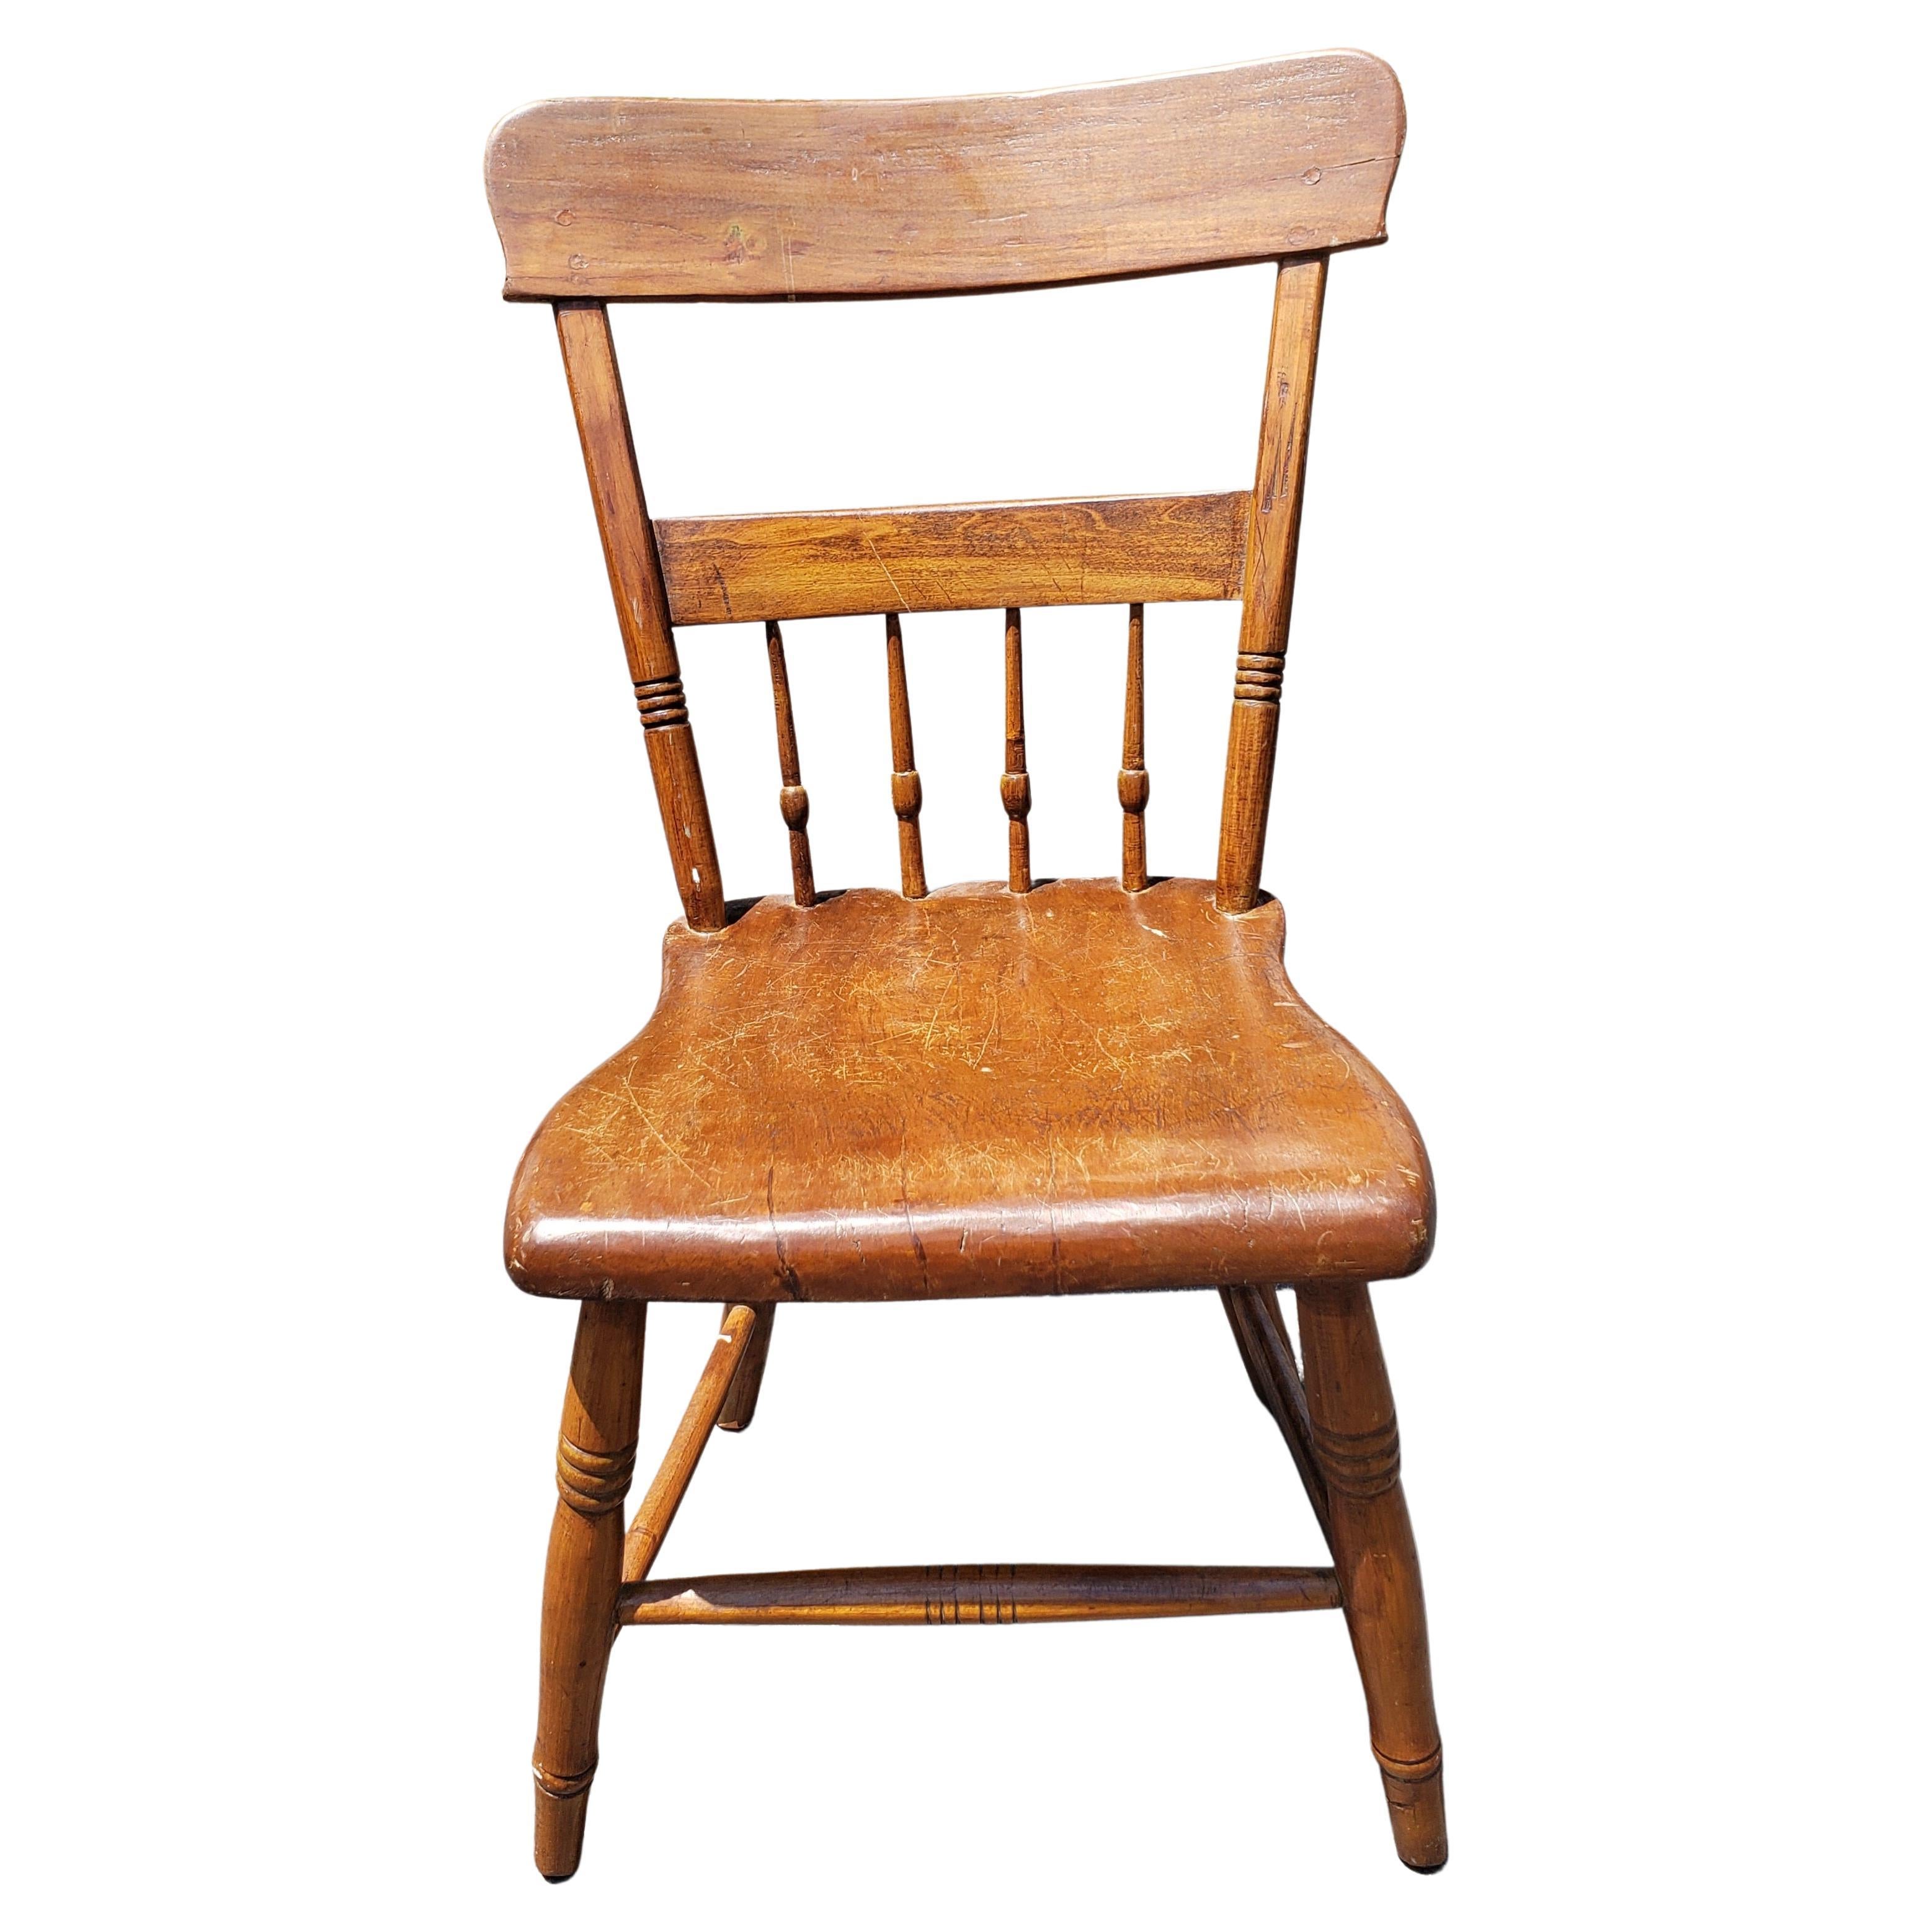 Style américain précoce de la fin du 19e siècle  Chaise en planches d'érable fabriquée à la main avec une belle patine de vieillissement. Il s'agit d'un excellent complément à votre collection.
Les dimensions sont de 18,5